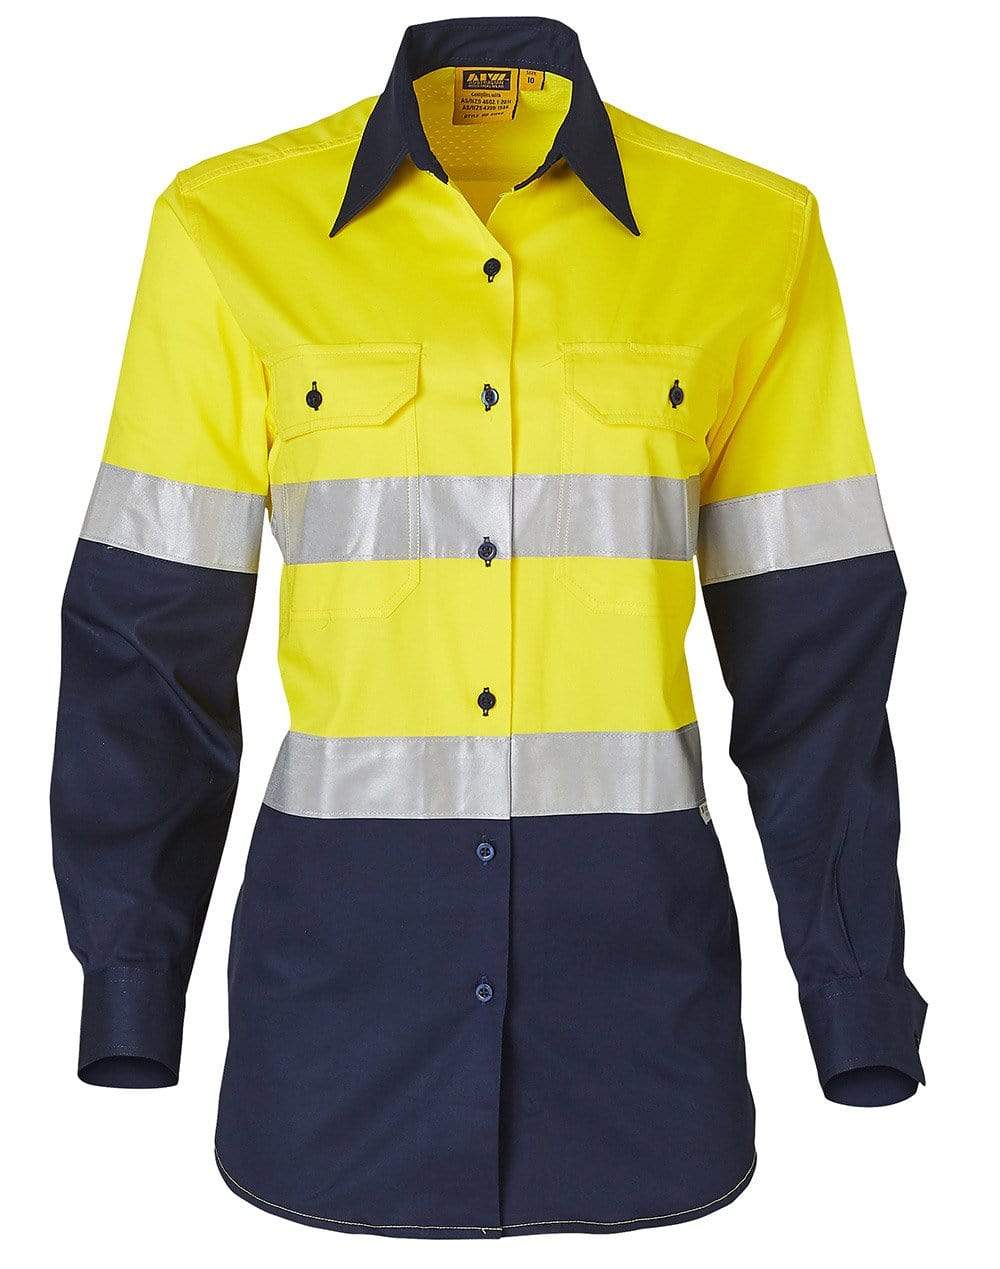 Women's Long Sleeve Safety Shirt SW64 Work Wear Australian Industrial Wear 8 Fluoro Yellow/Navy 